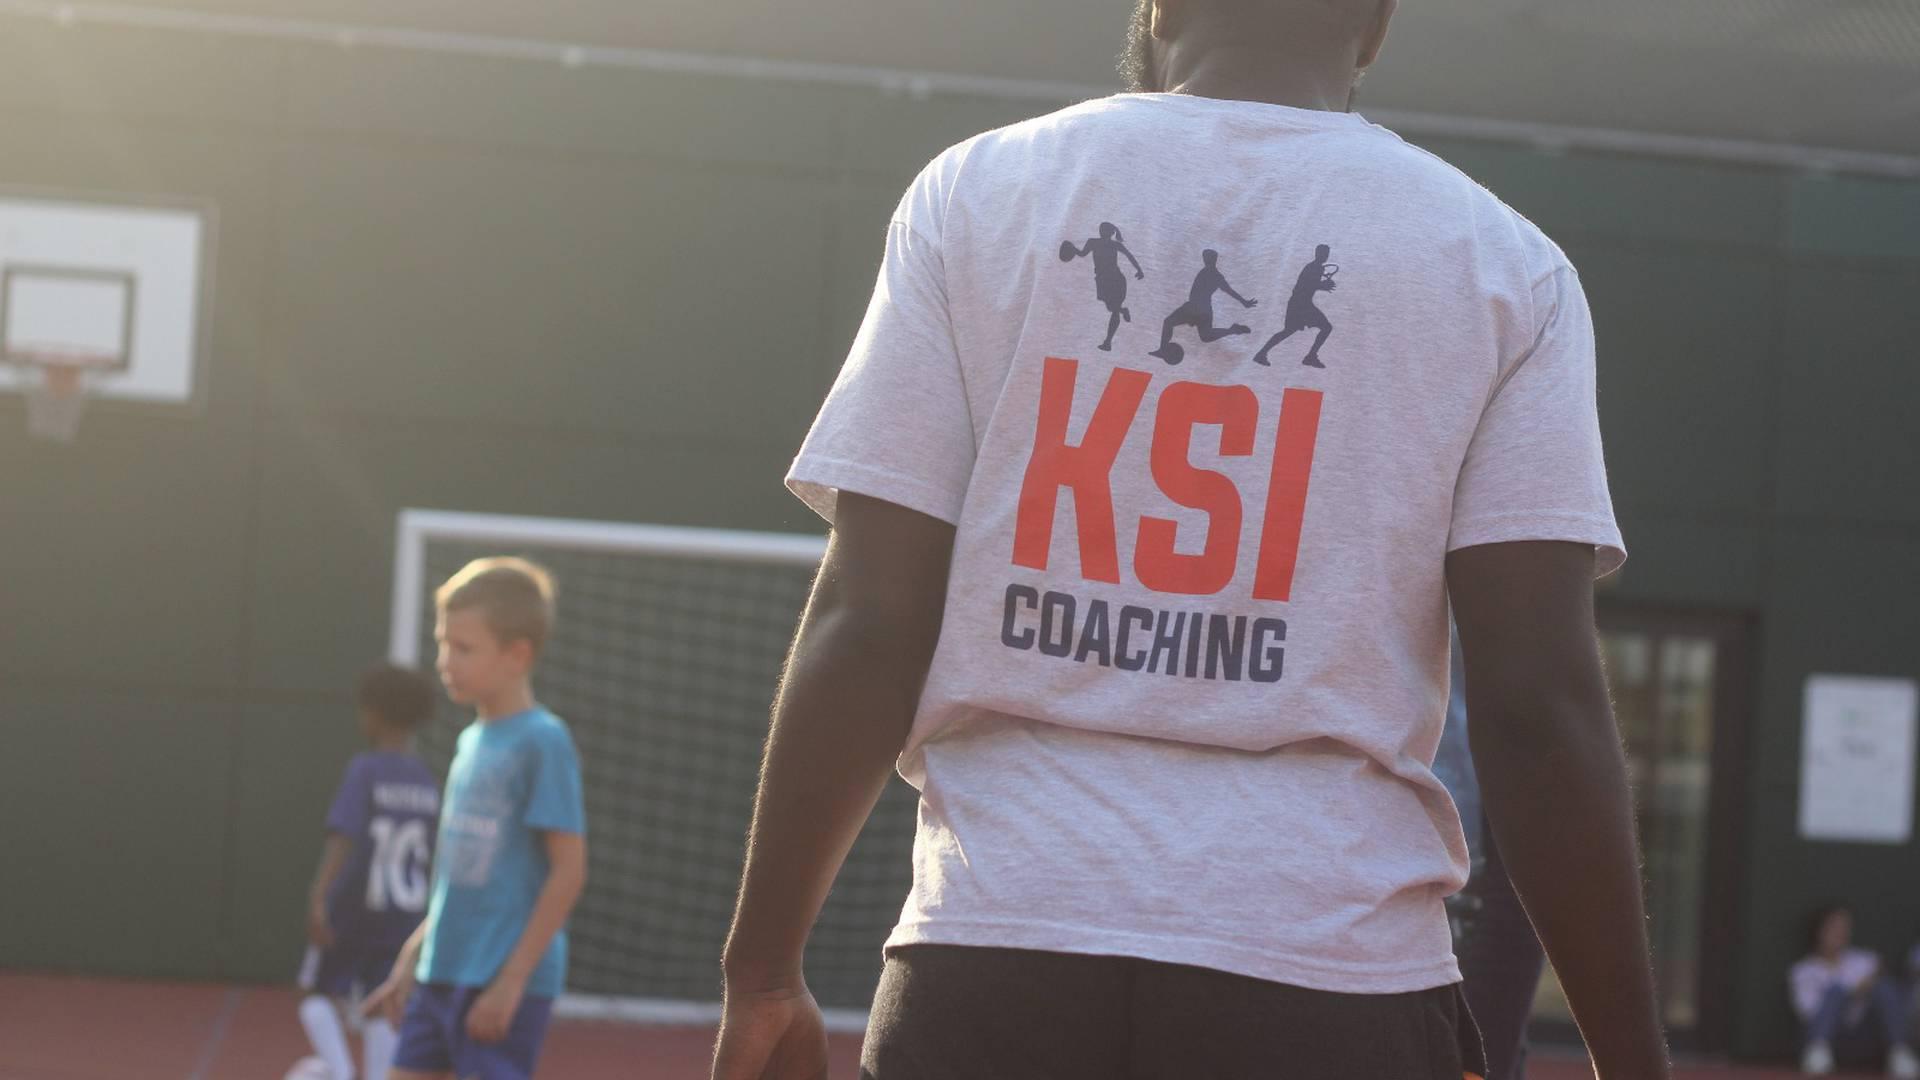 KSI Coaching photo